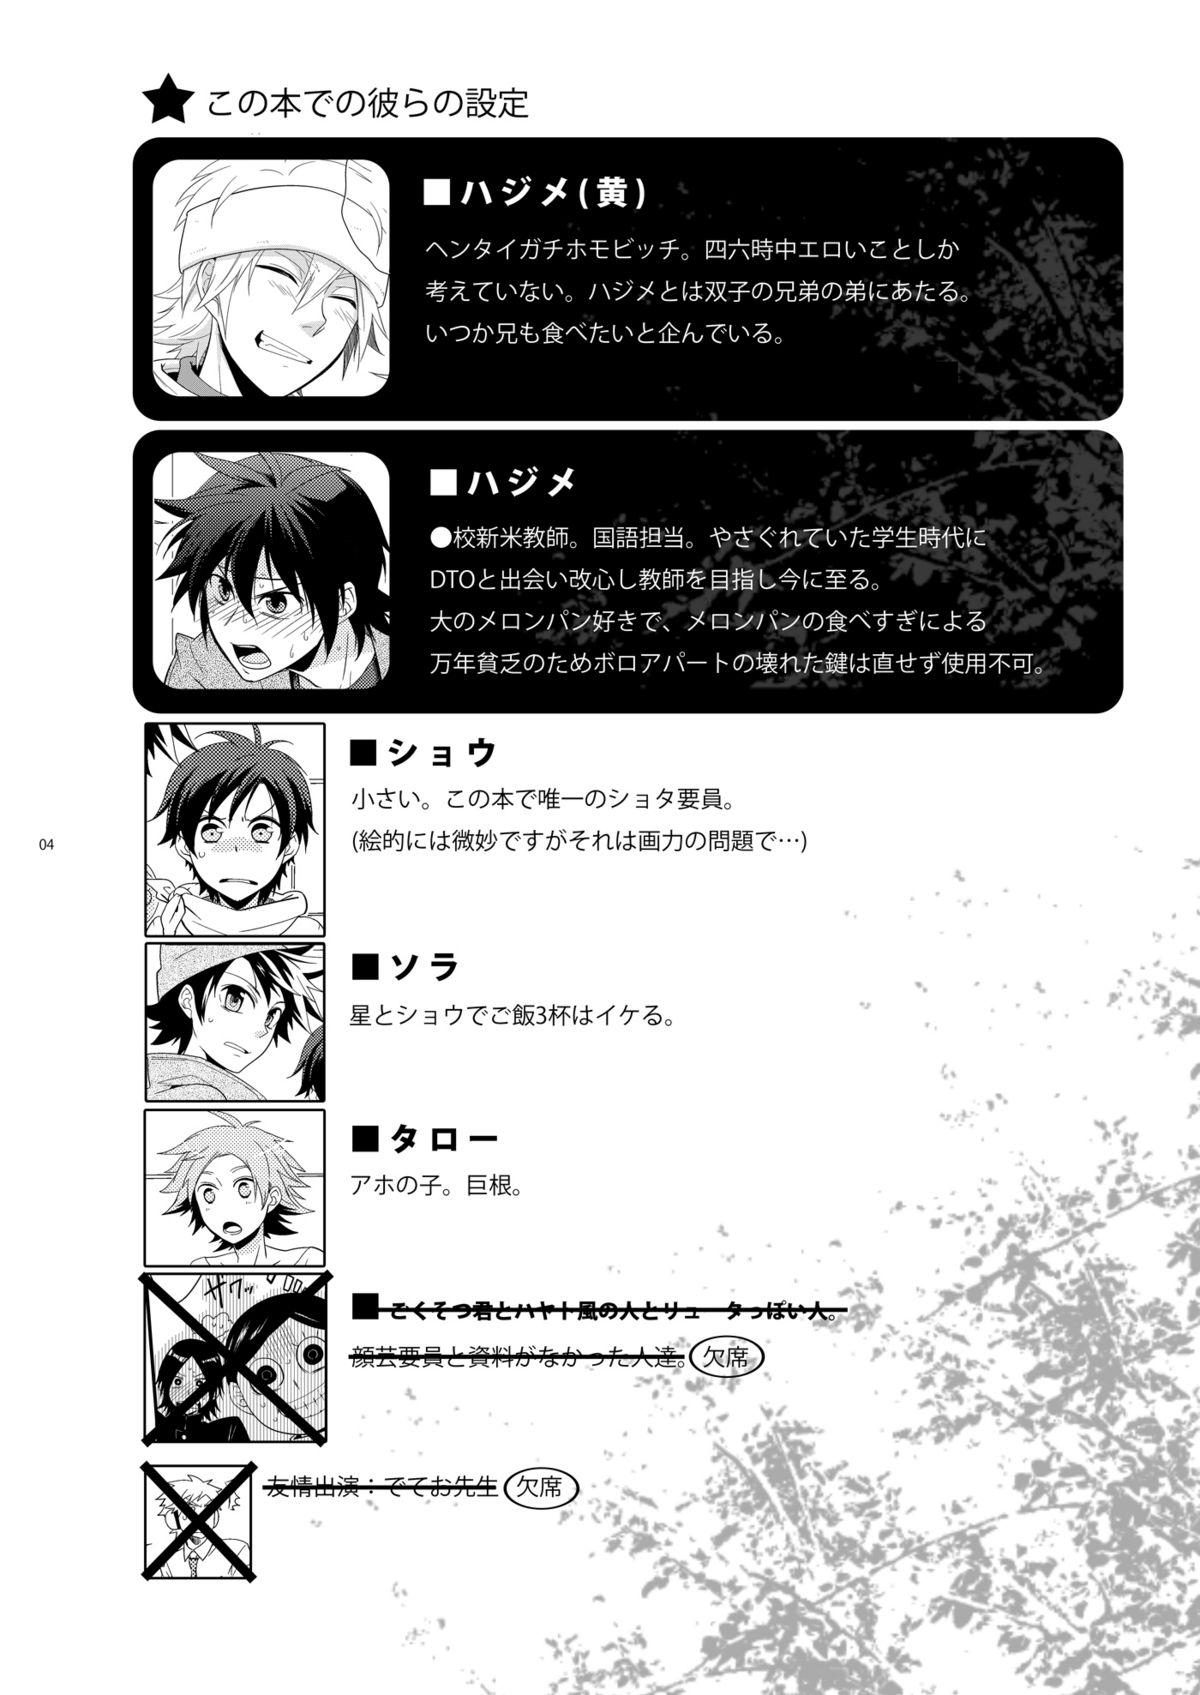 Fodendo Hajime-sensei to Otona no Hoken Taiiku 2 - Popn music Pool - Page 3